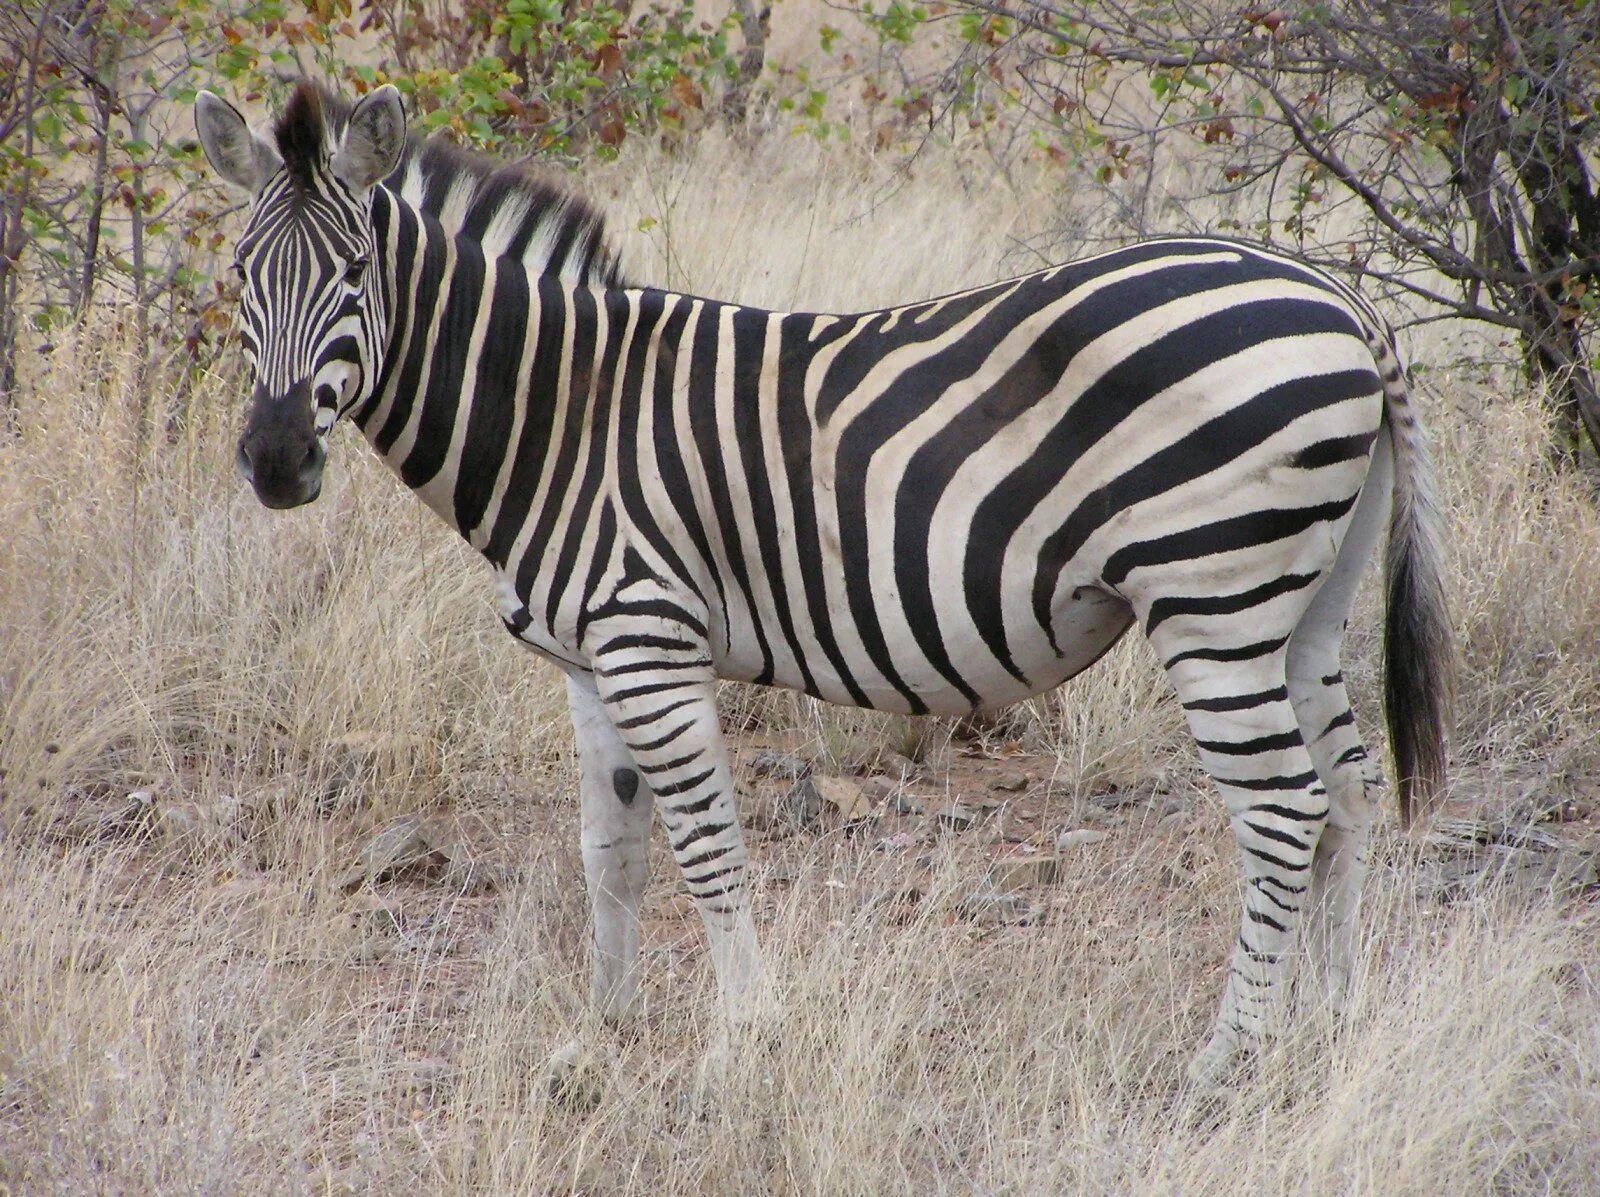 Вроде зебры. Пустынная Зебра. Окрас зебры. Зебра белая в черную полоску или черная в белую полоску. Расчленяющая окраска животных.